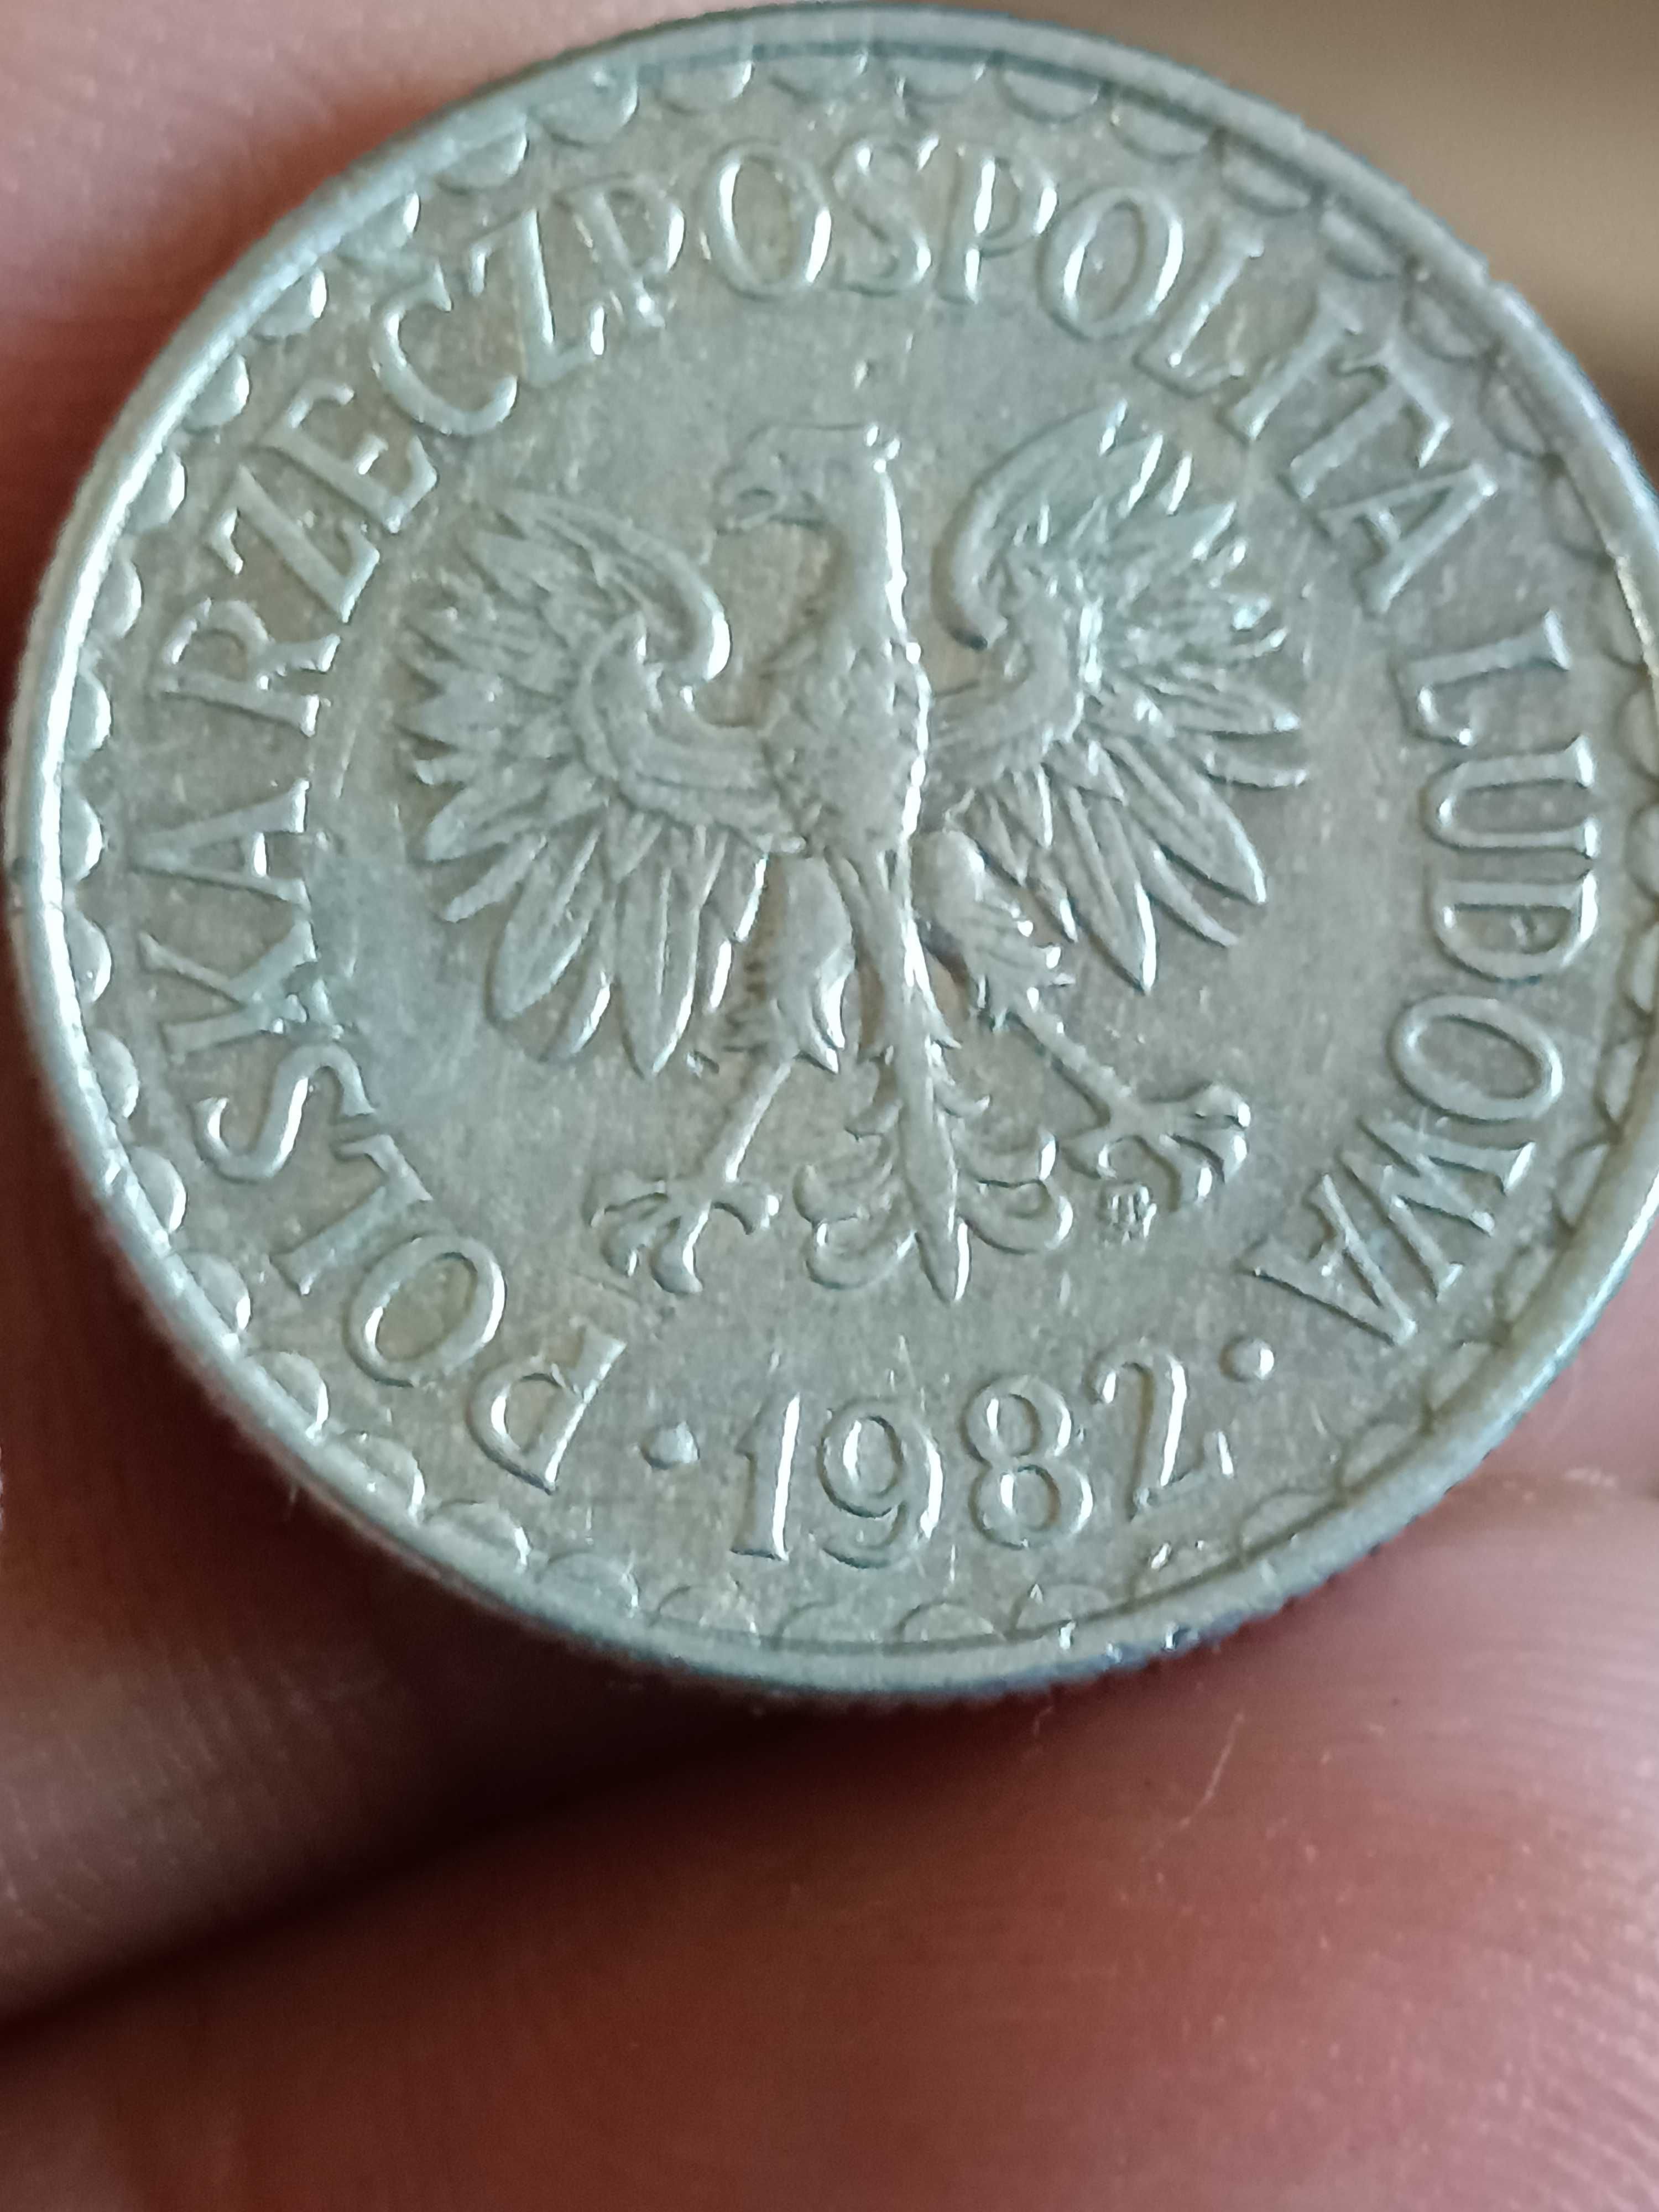 Sprzedam monetę 1 zloty 1982 rok wąska data